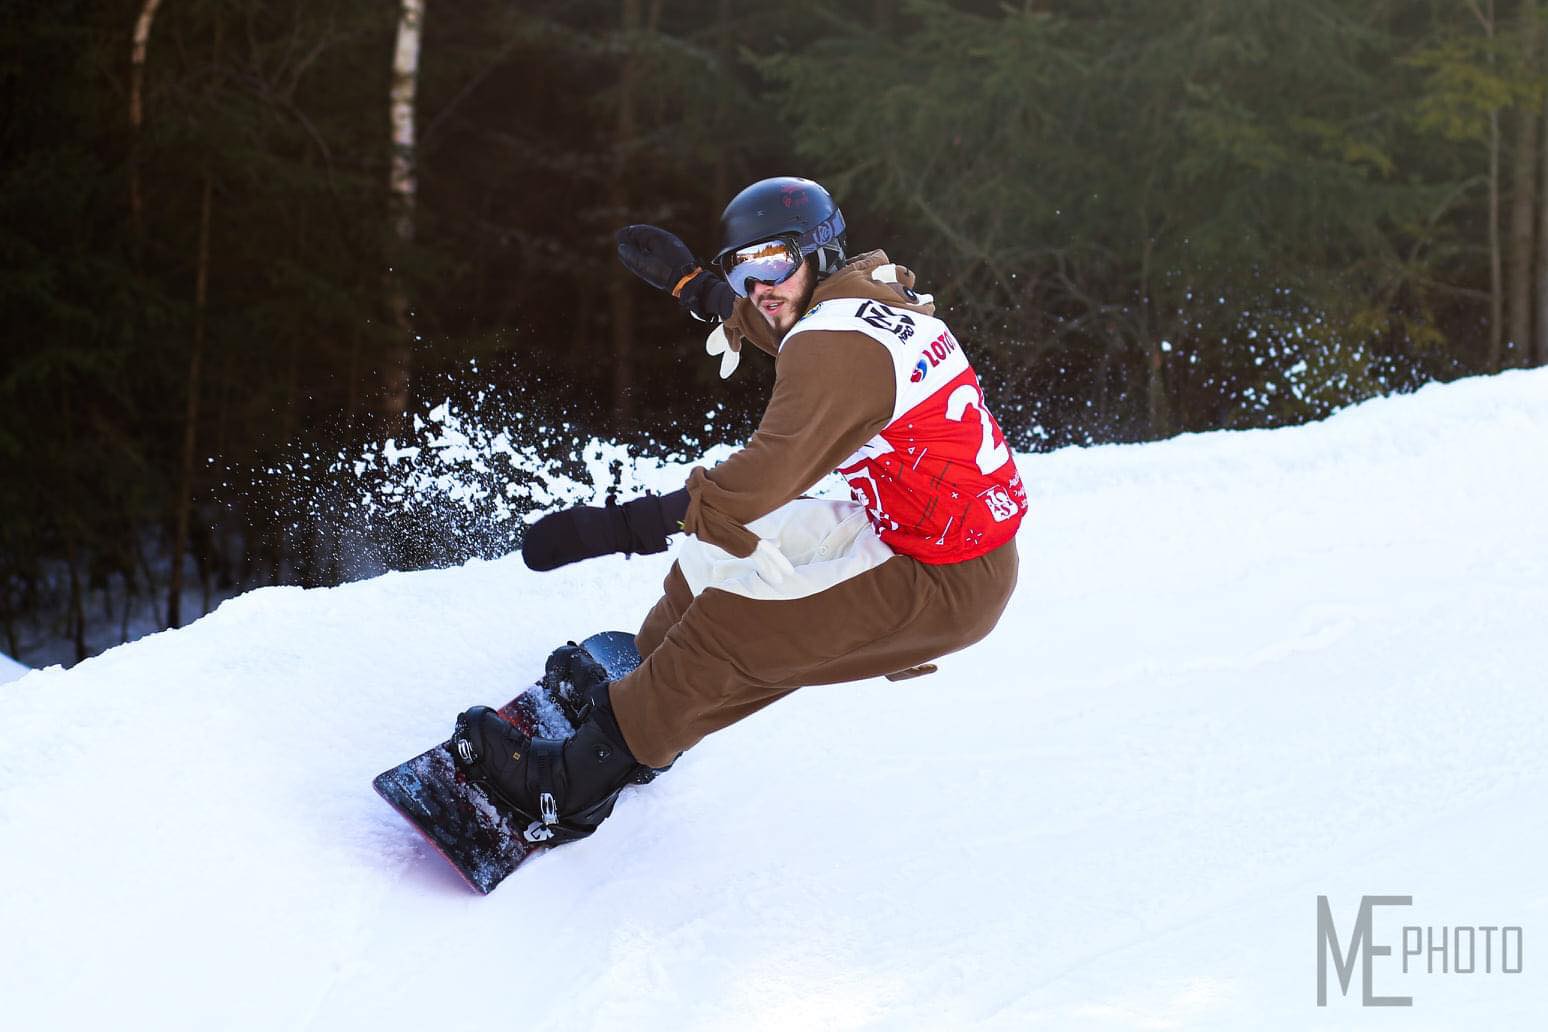 zjazd chłopaka na snowboardzie w stroju niedźwiedzia